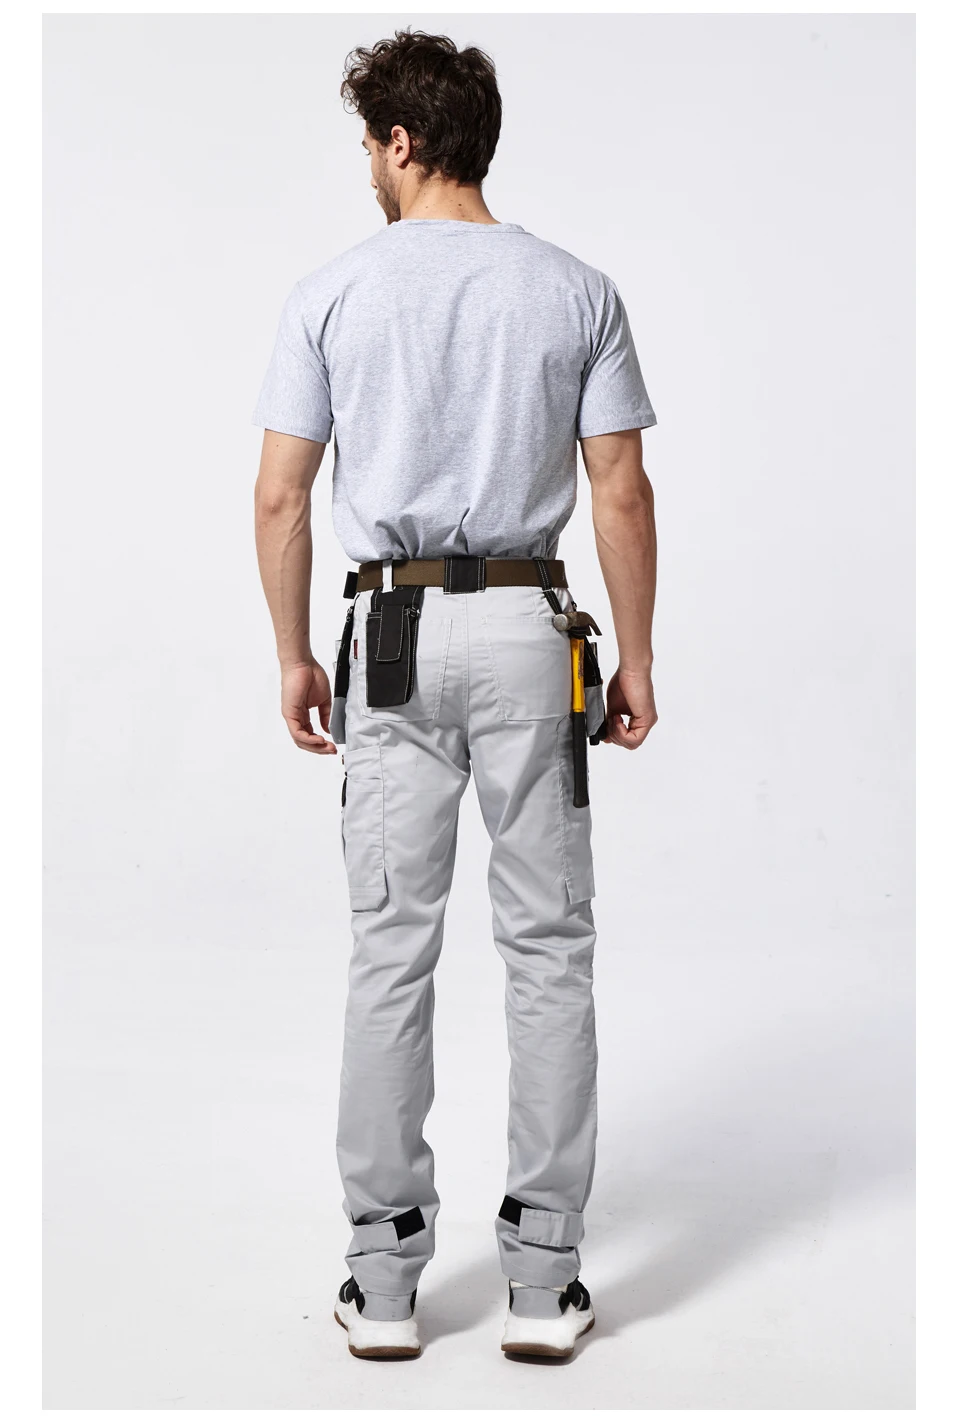 Мужские рабочие брюки с несколькими карманами для инструментов, летние брюки высокого качества, безопасные рабочие механические брюки-карго, рабочие брюки серого цвета B218